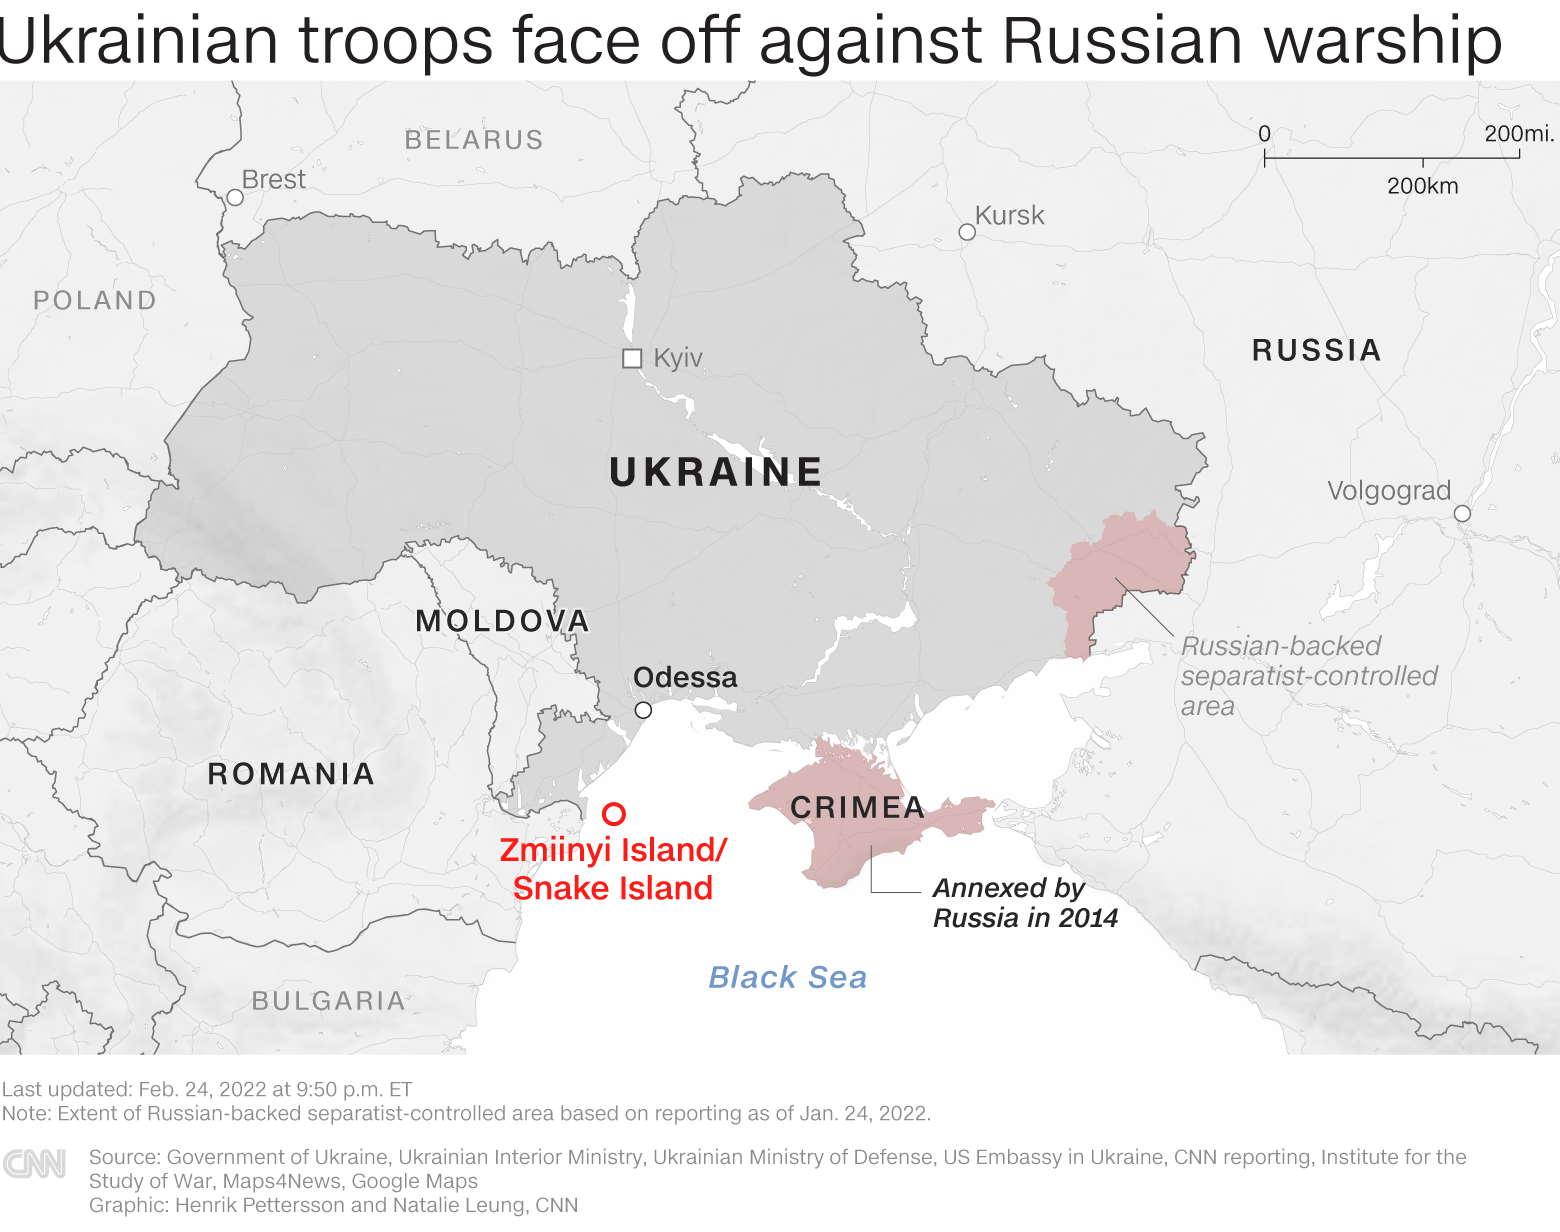 https://cdn.cnn.com/cnn/interactive/uploads/20220225-ukraine-snake-island-map-780px.png